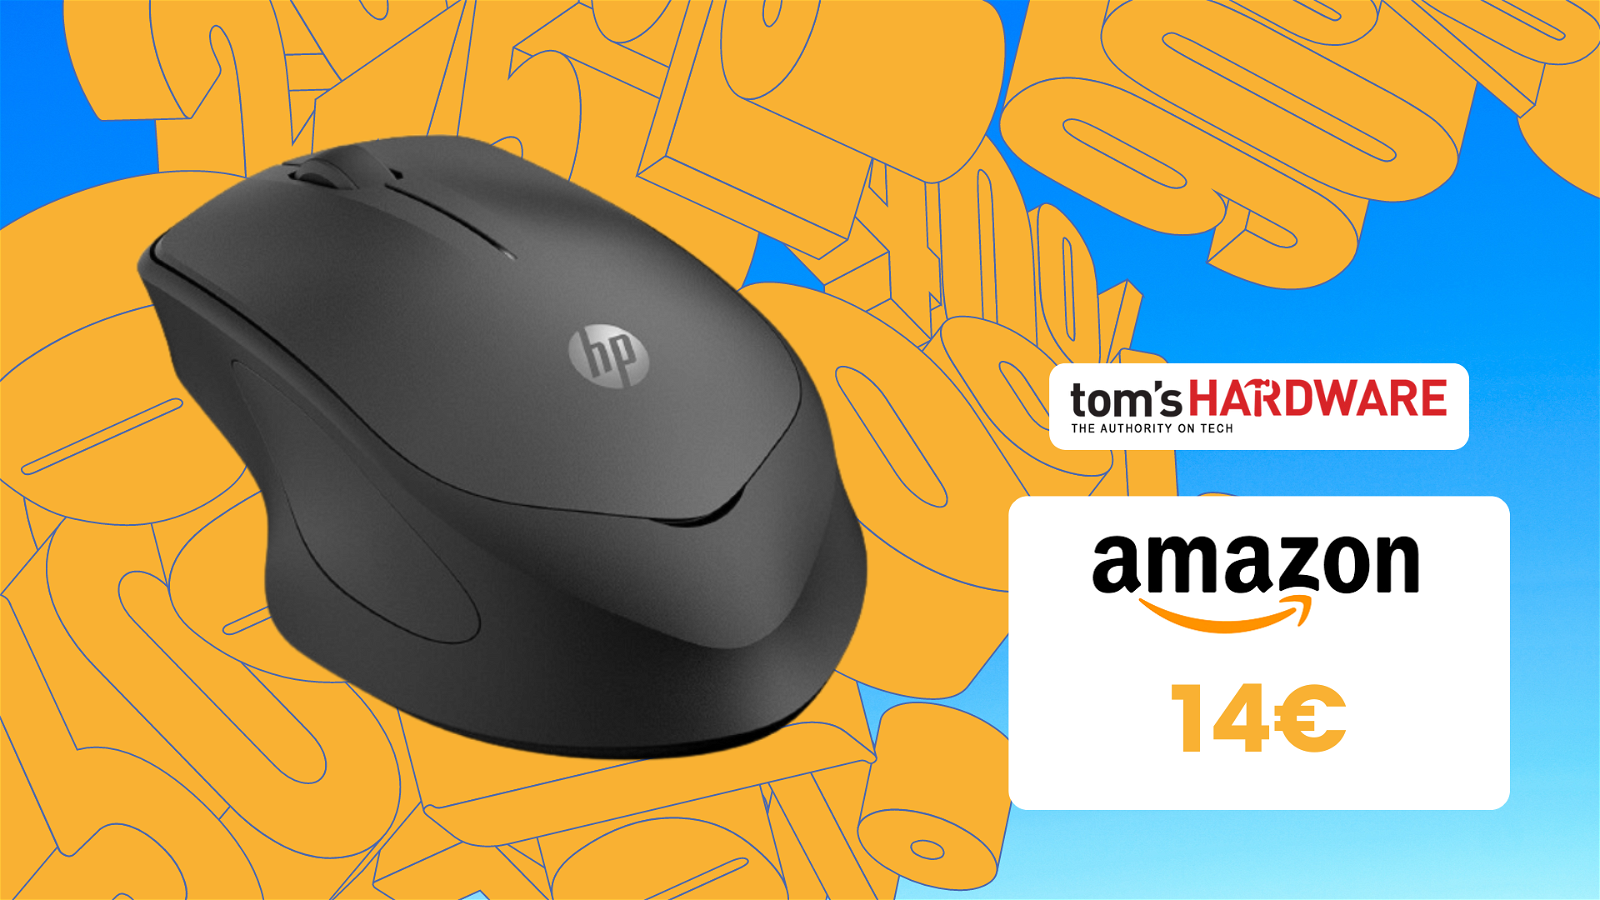 Immagine di Cerchi un mouse comodissimo e wireless? Questo modello HP oggi costa meno di 15€!